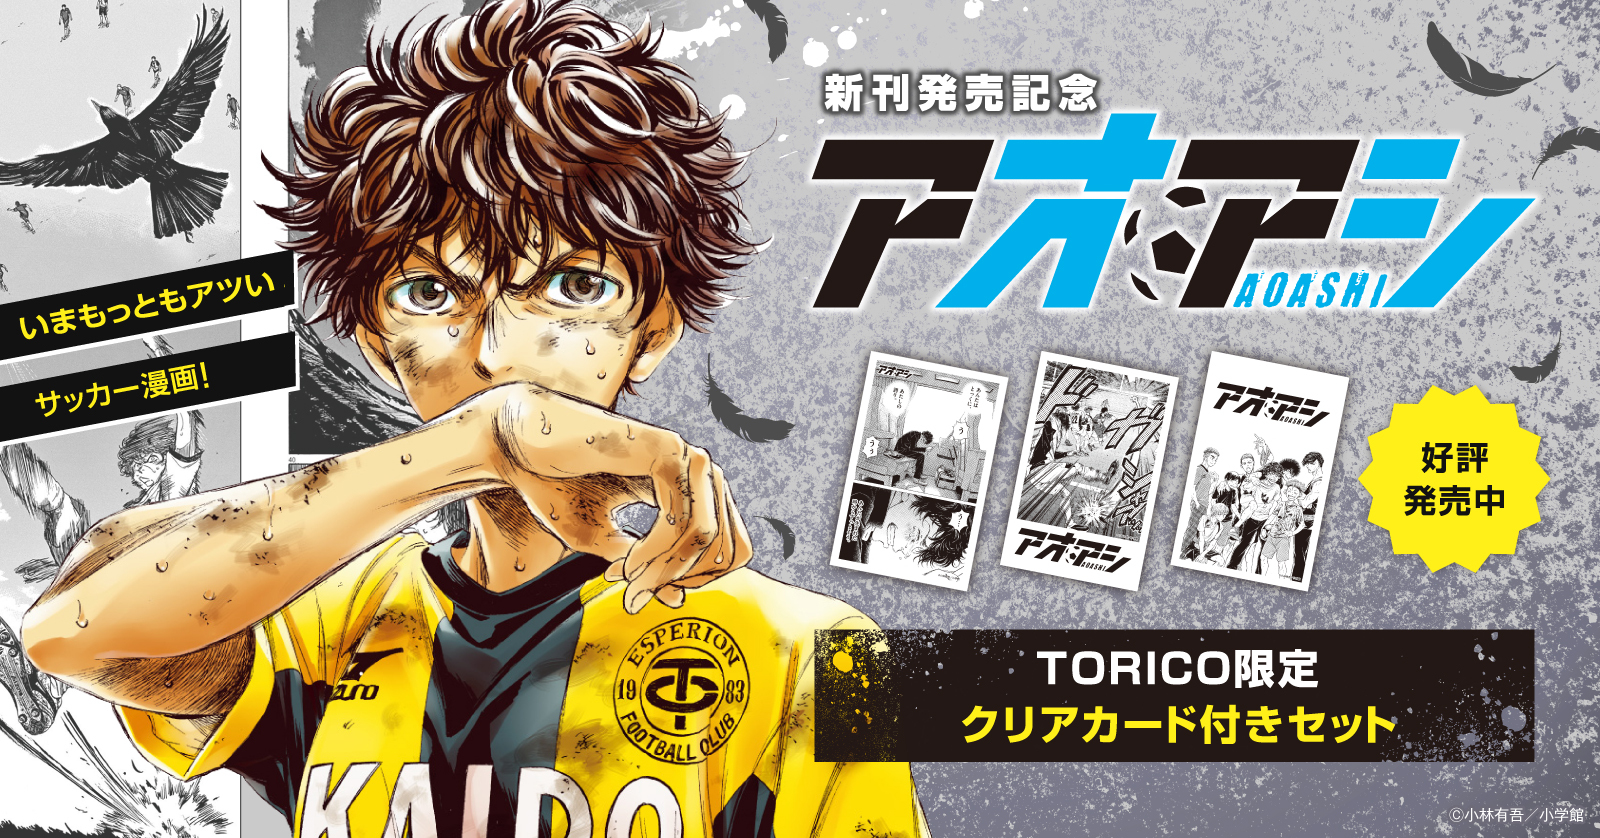 アオアシ 新刊発売記念 Torico限定クリアカード付きセット発売決定 漫画全巻ドットコム